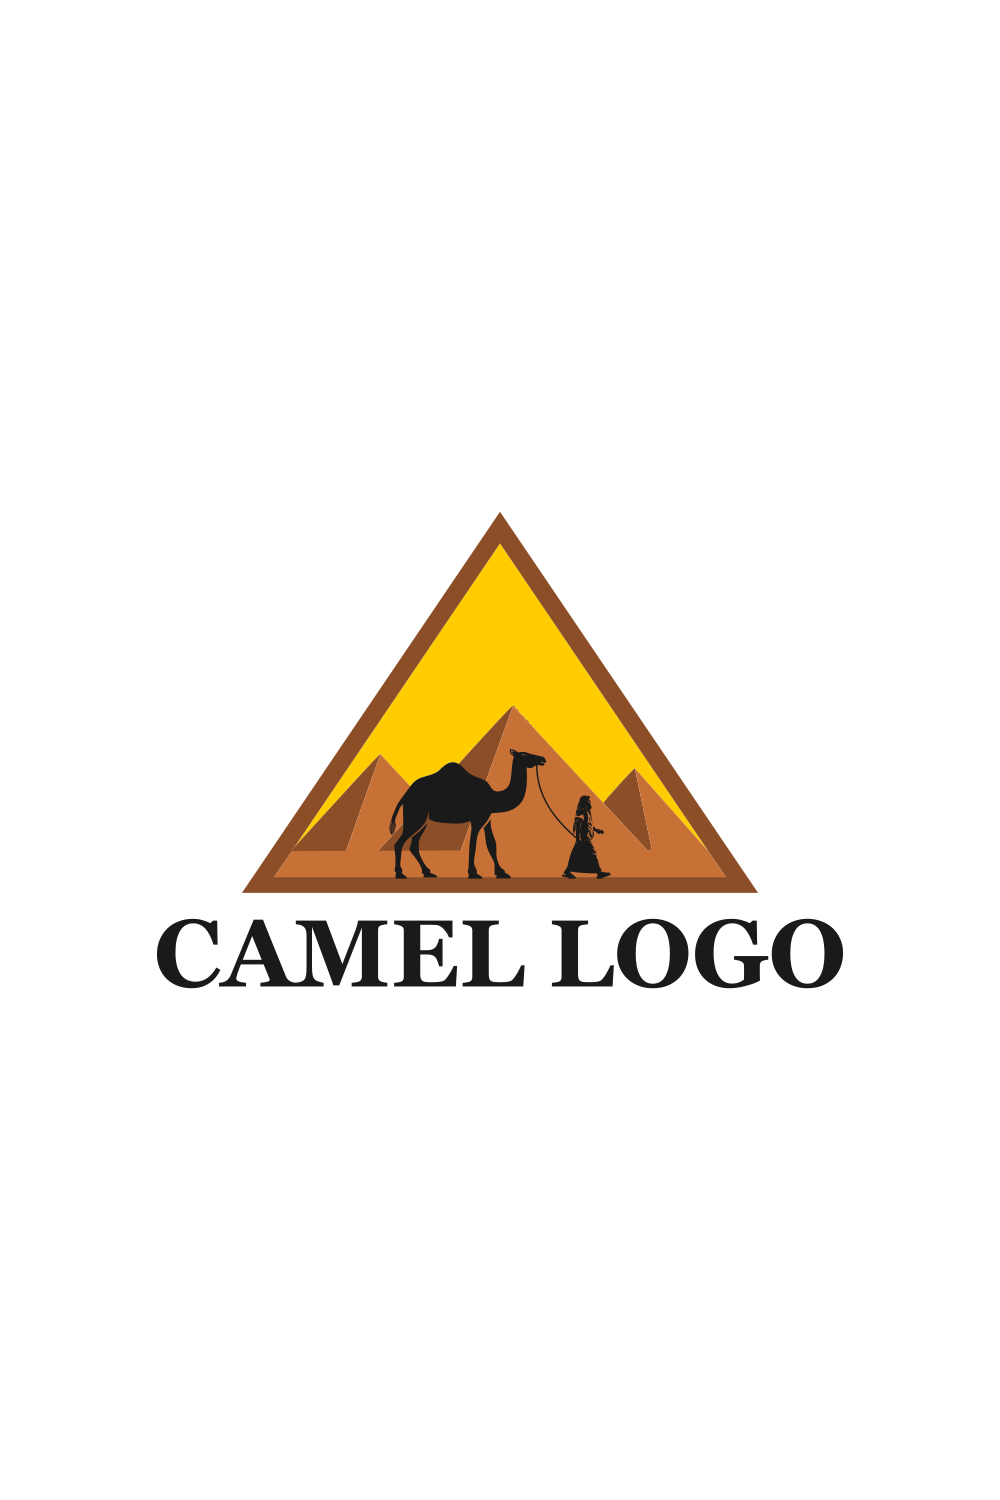 Vintage Style Camel Logo Design pinterest image.